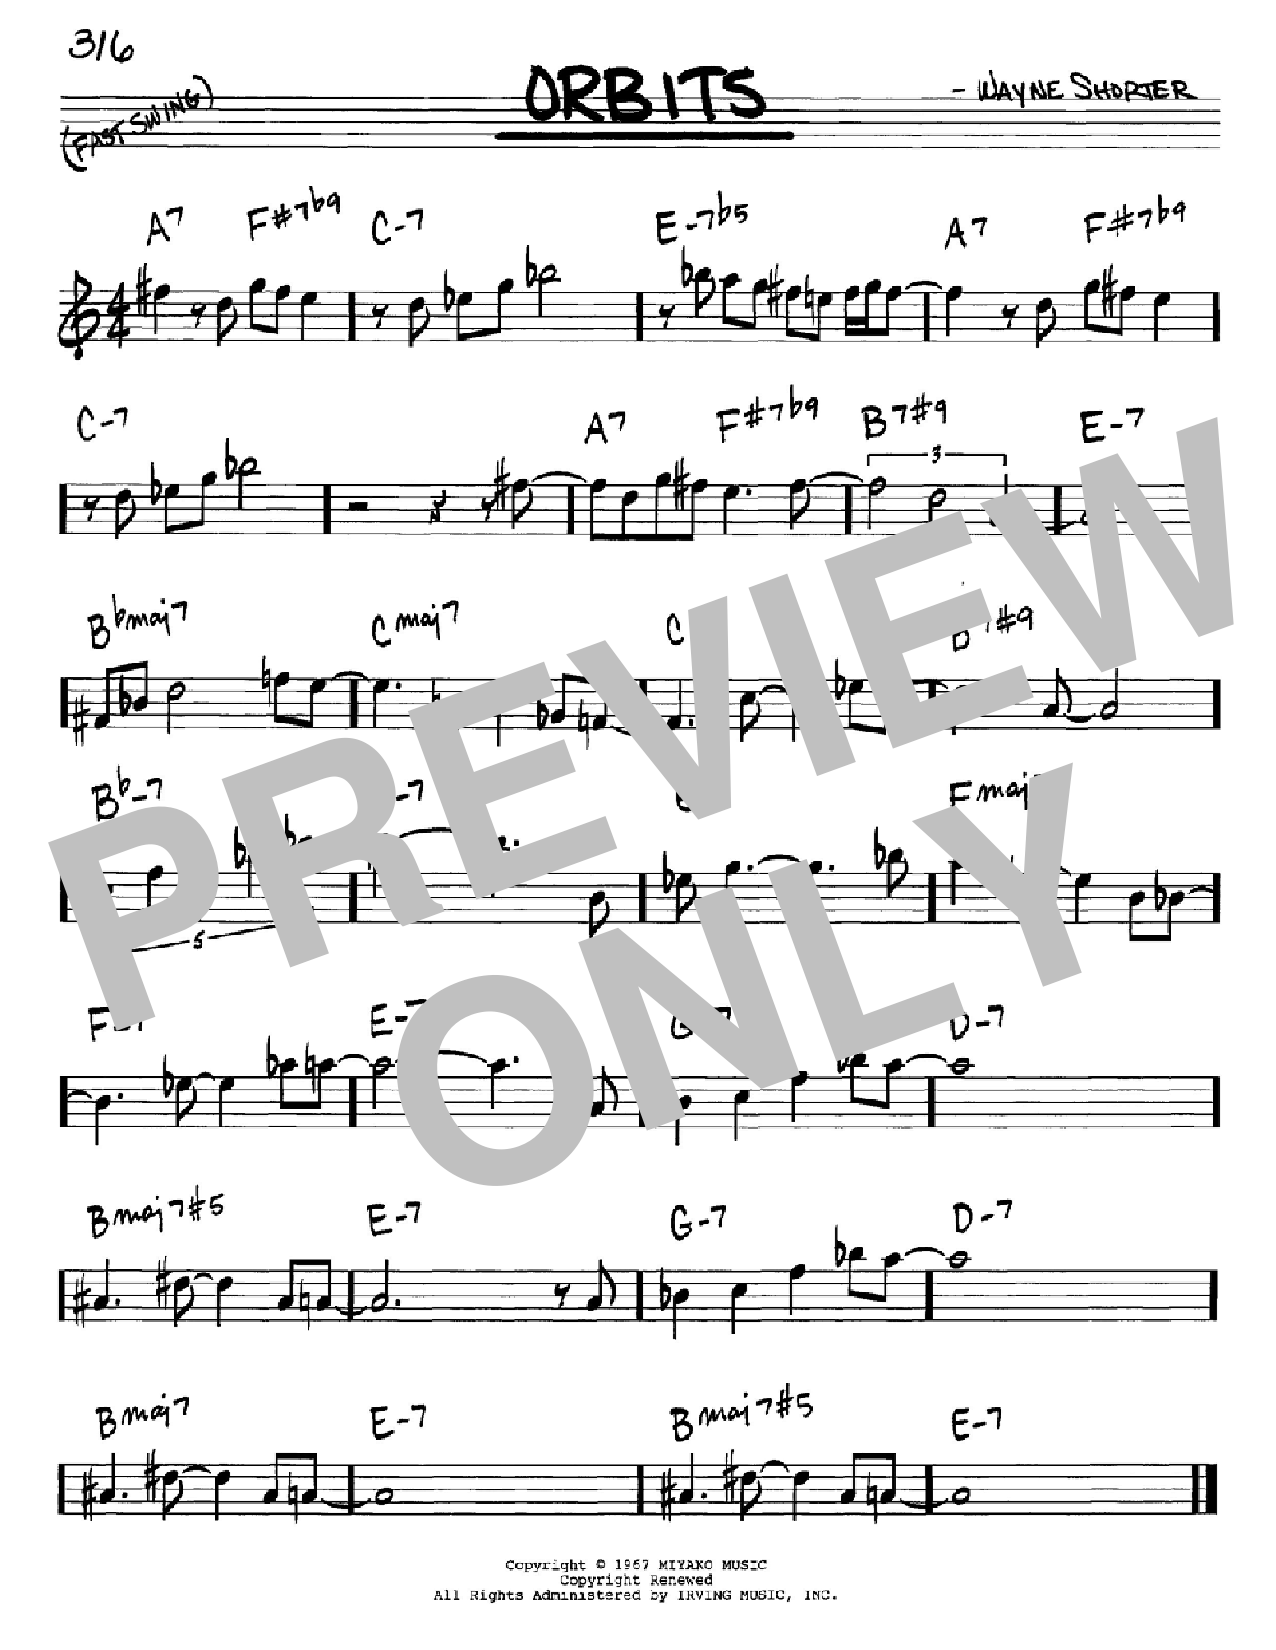 Download Wayne Shorter Orbits Sheet Music